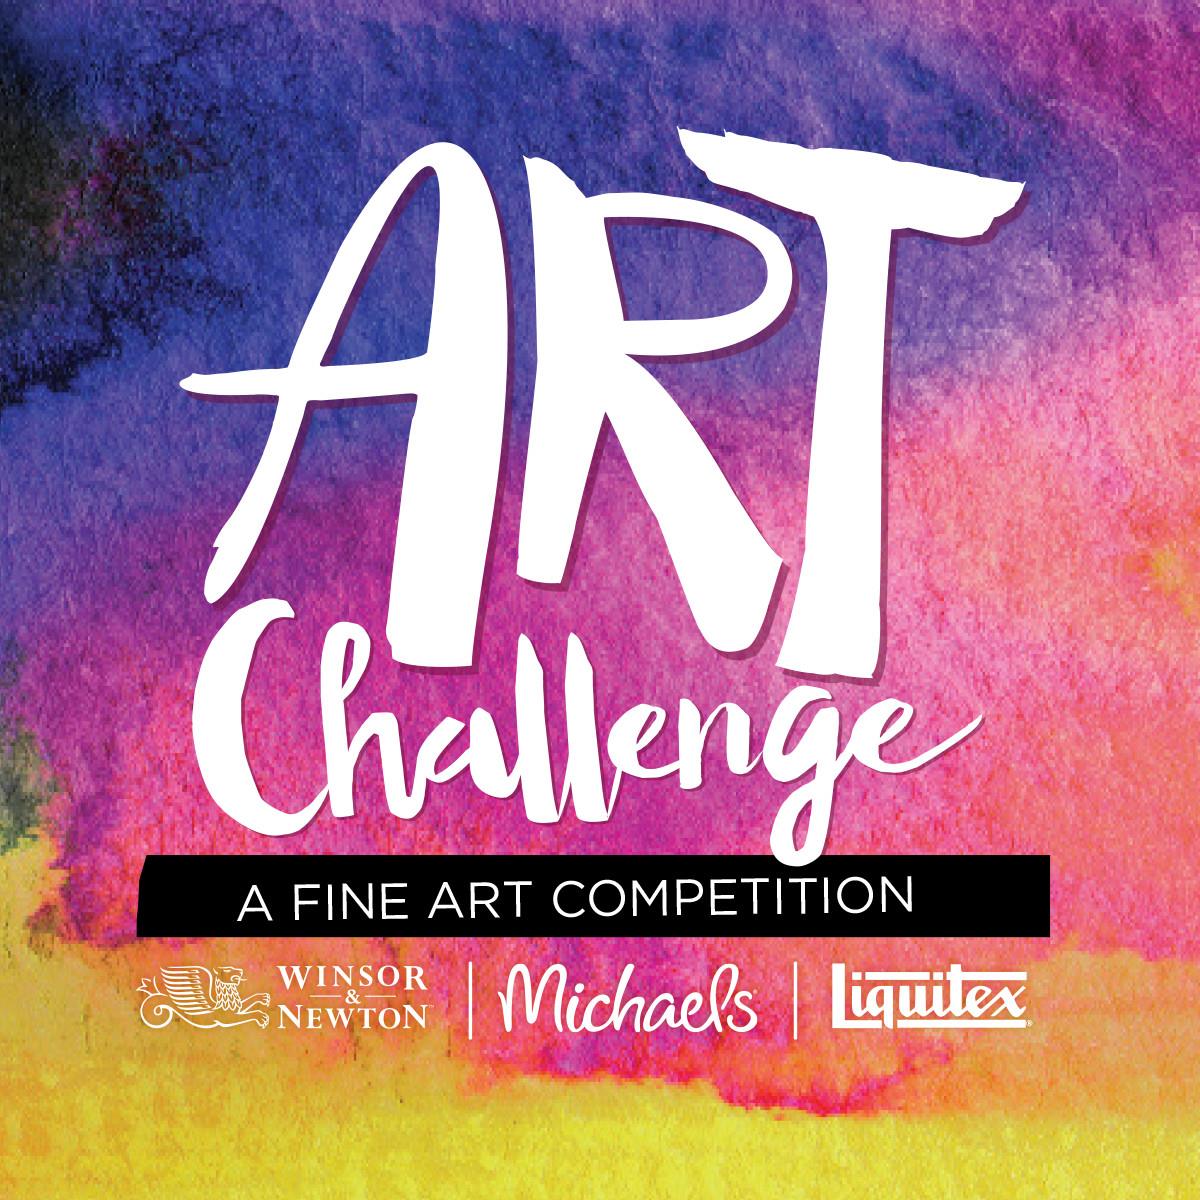 Michaels launches a fine arts contest